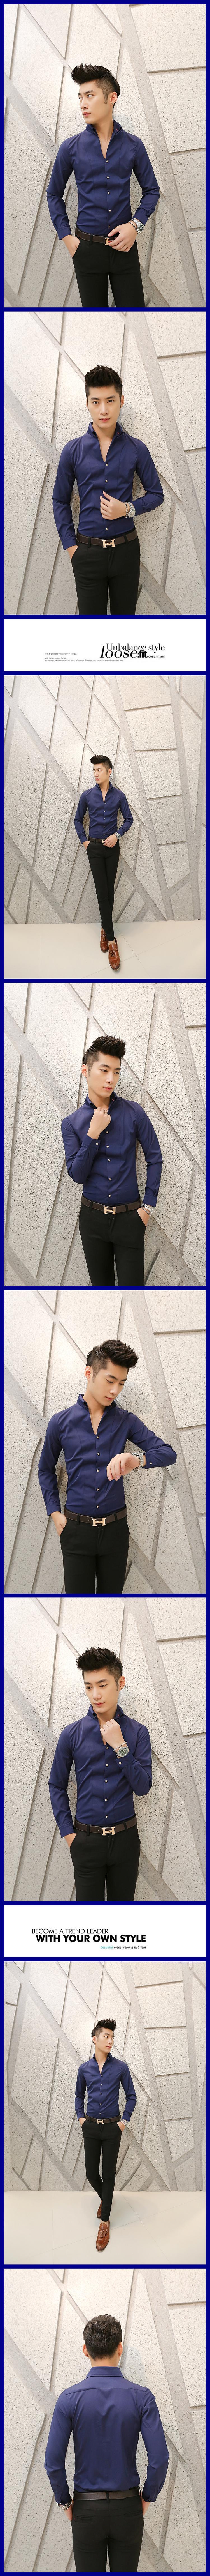 mssefn2014韩版春秋季男士休闲长袖衬衫 潮男纯色修身型男装衬衣 C32